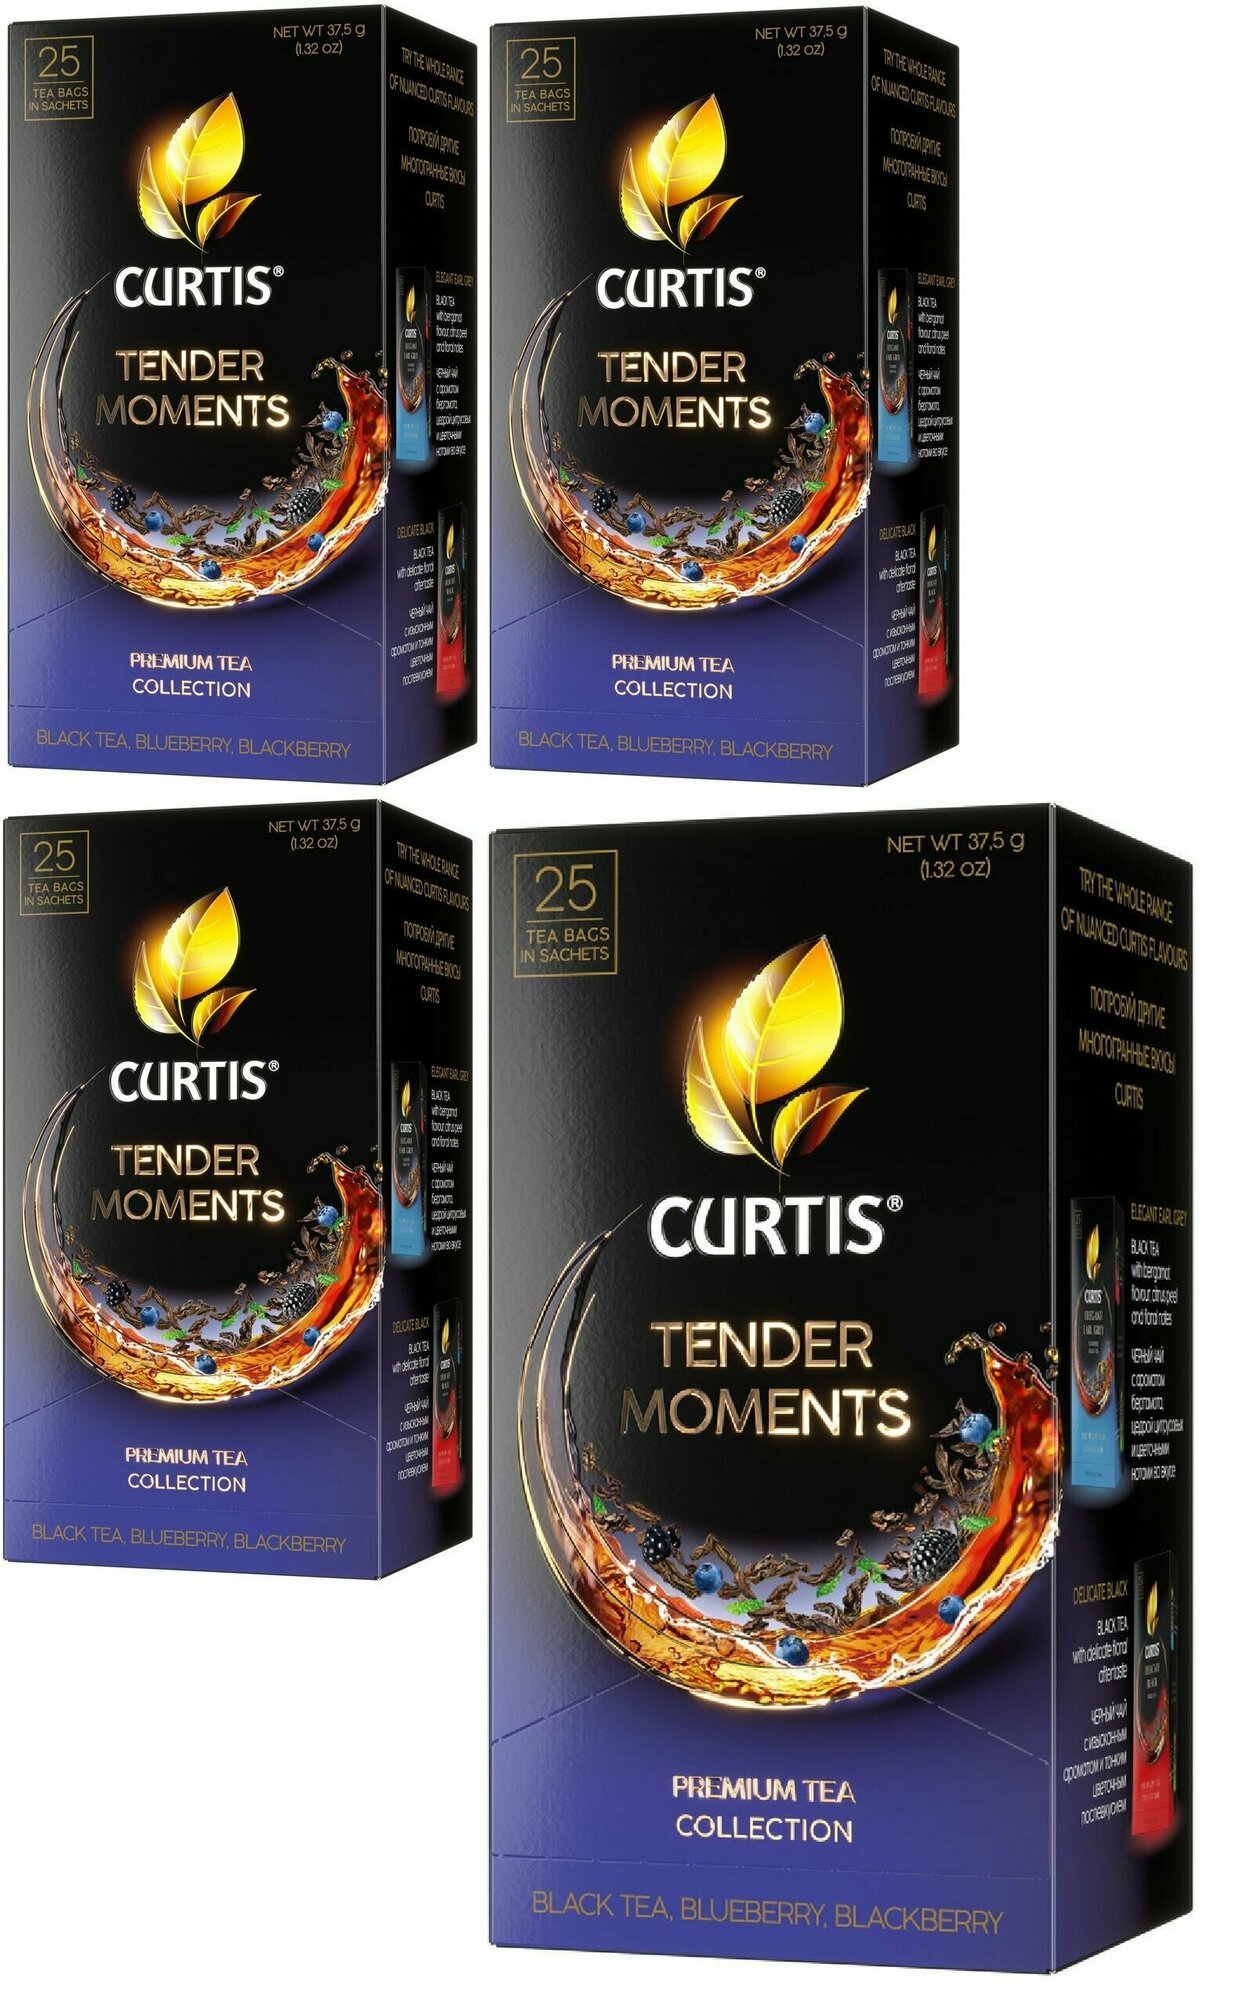 Чай в пакетиках, "Curtis Tender Moments", чёрный, c черникой, ежевикой и мятой, мелколистовой, (25 пакетиков по 1.5г в коробке) 4 упаковки